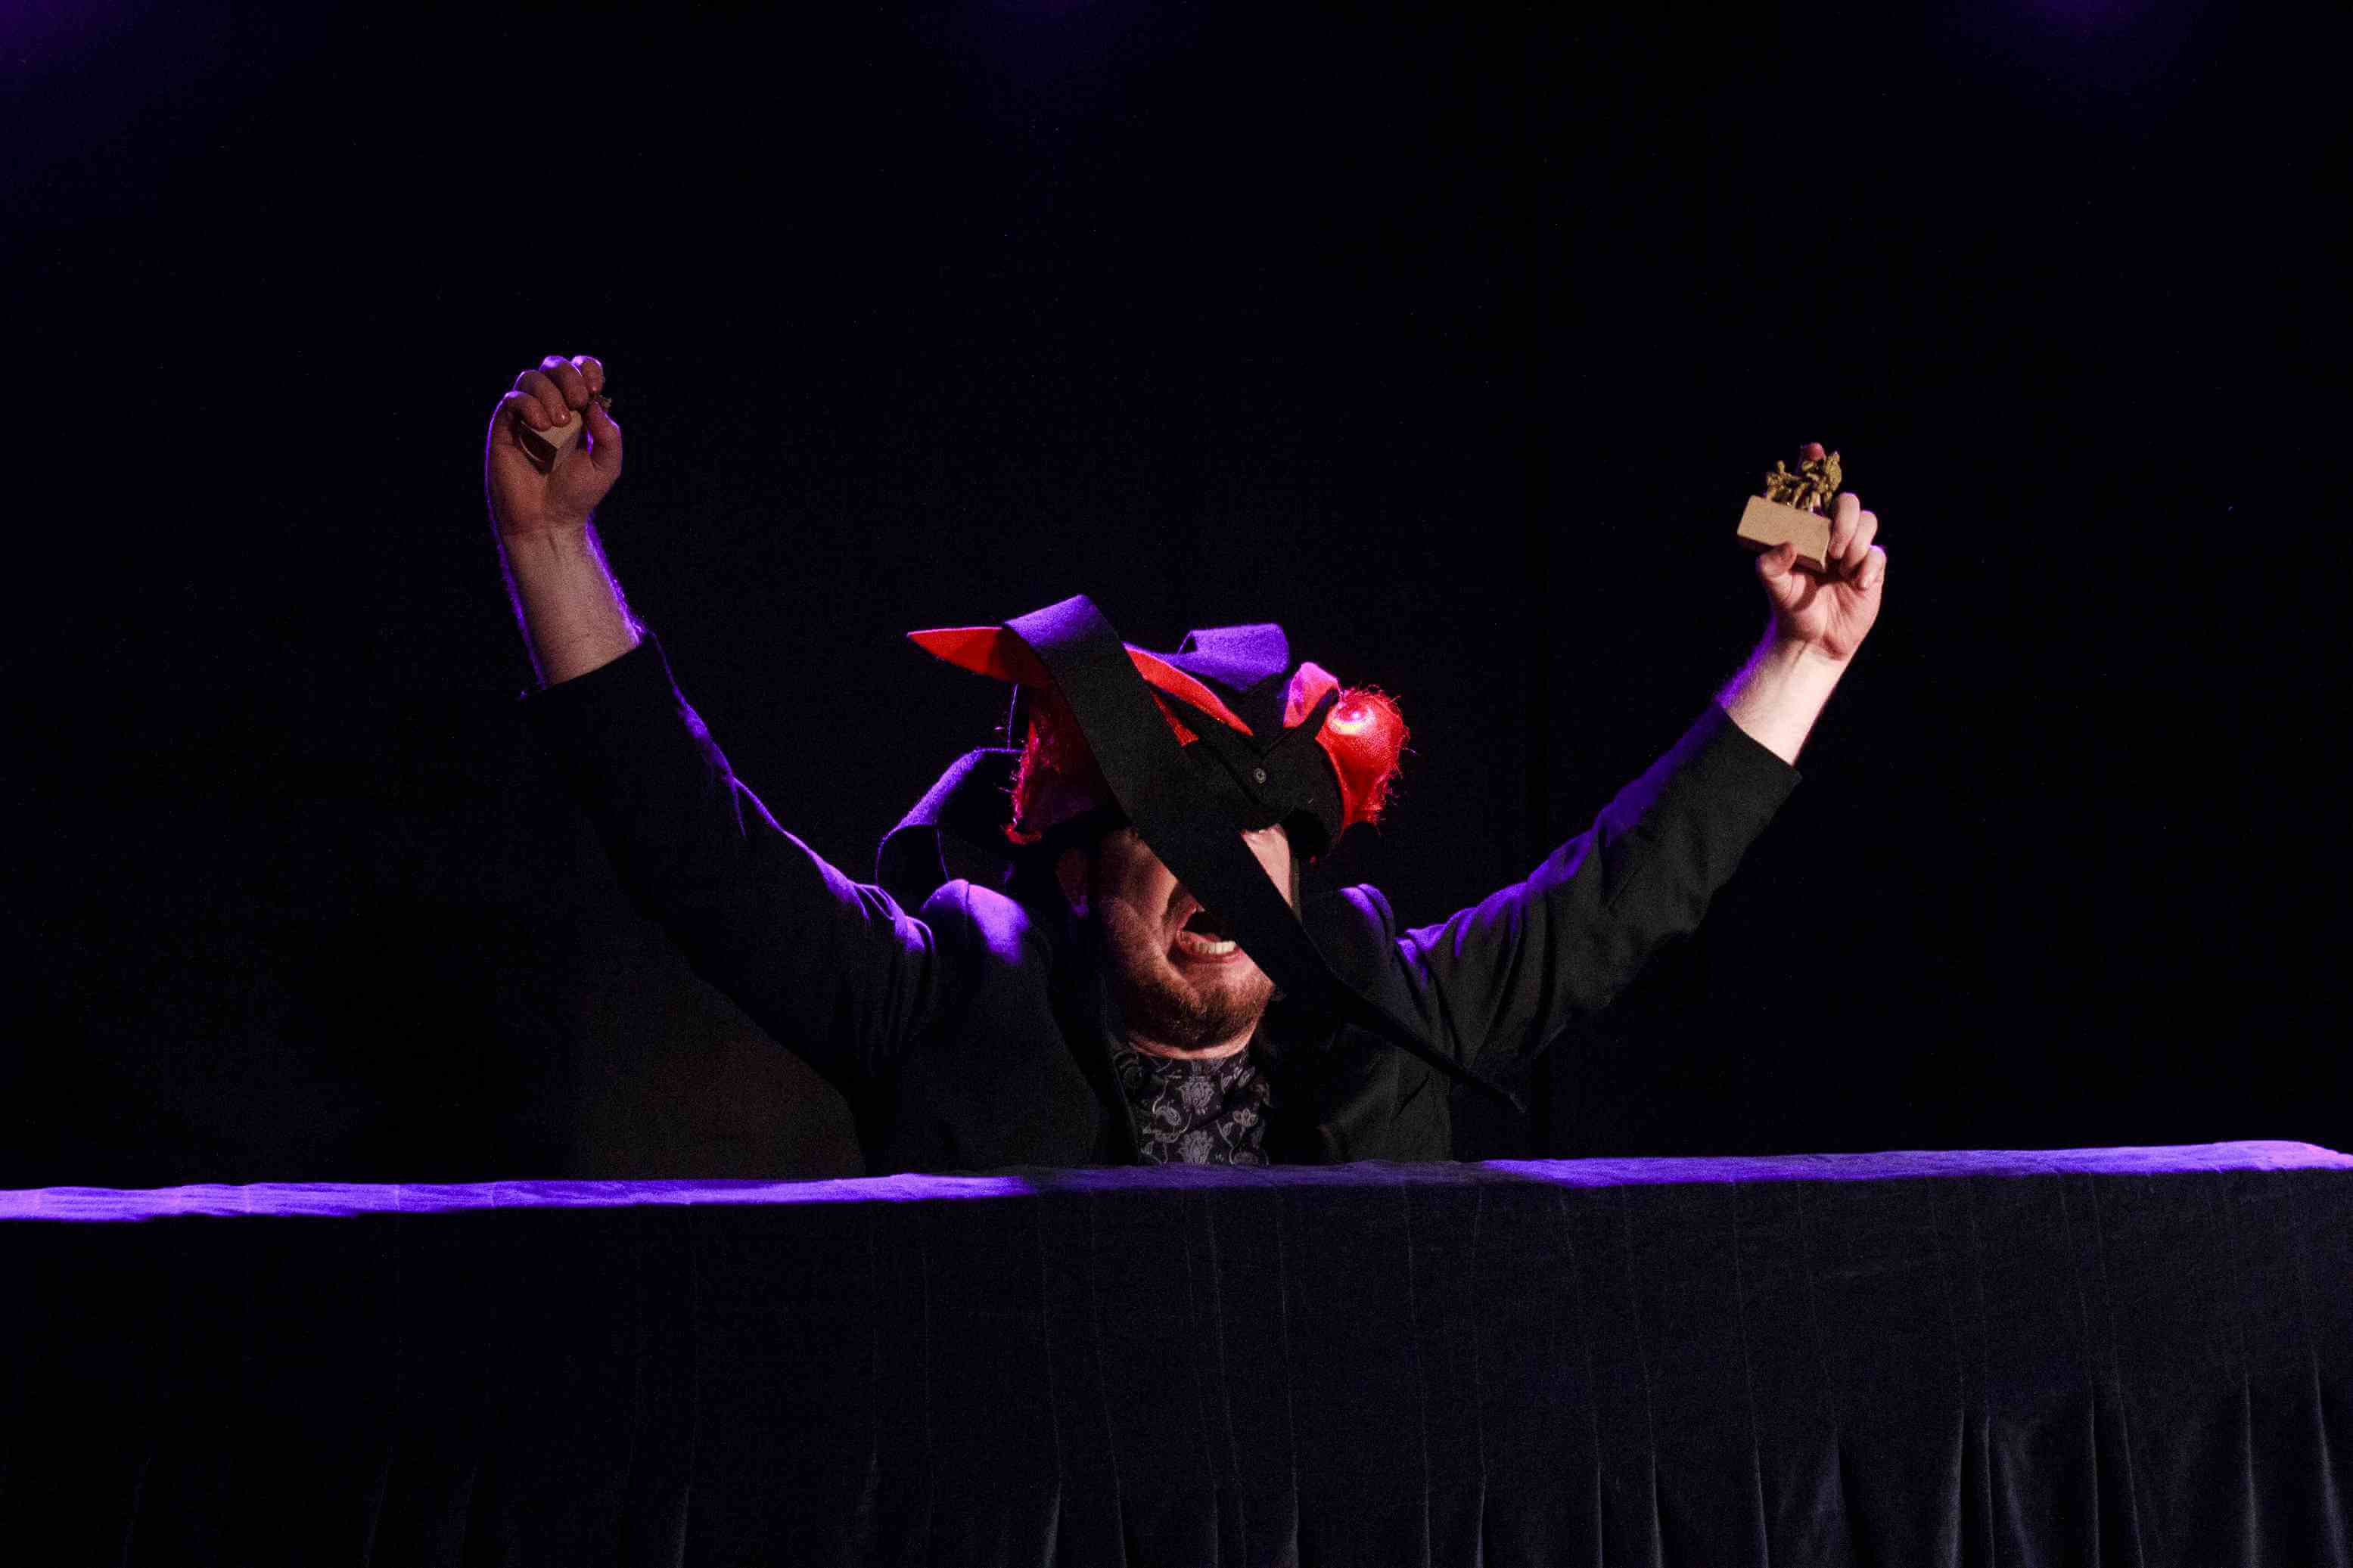 aktor wyłania się zza czarnego blatu, ubrany jest na czarno, na głowie ma makietę głowy czarengo smoka z czerwonymi oczami, aktor ma otwarte usta, krzyczy, ręce ma uniesione do góry, w dłoniach trzyma zabawkowe żołnierzyki ciemne tło